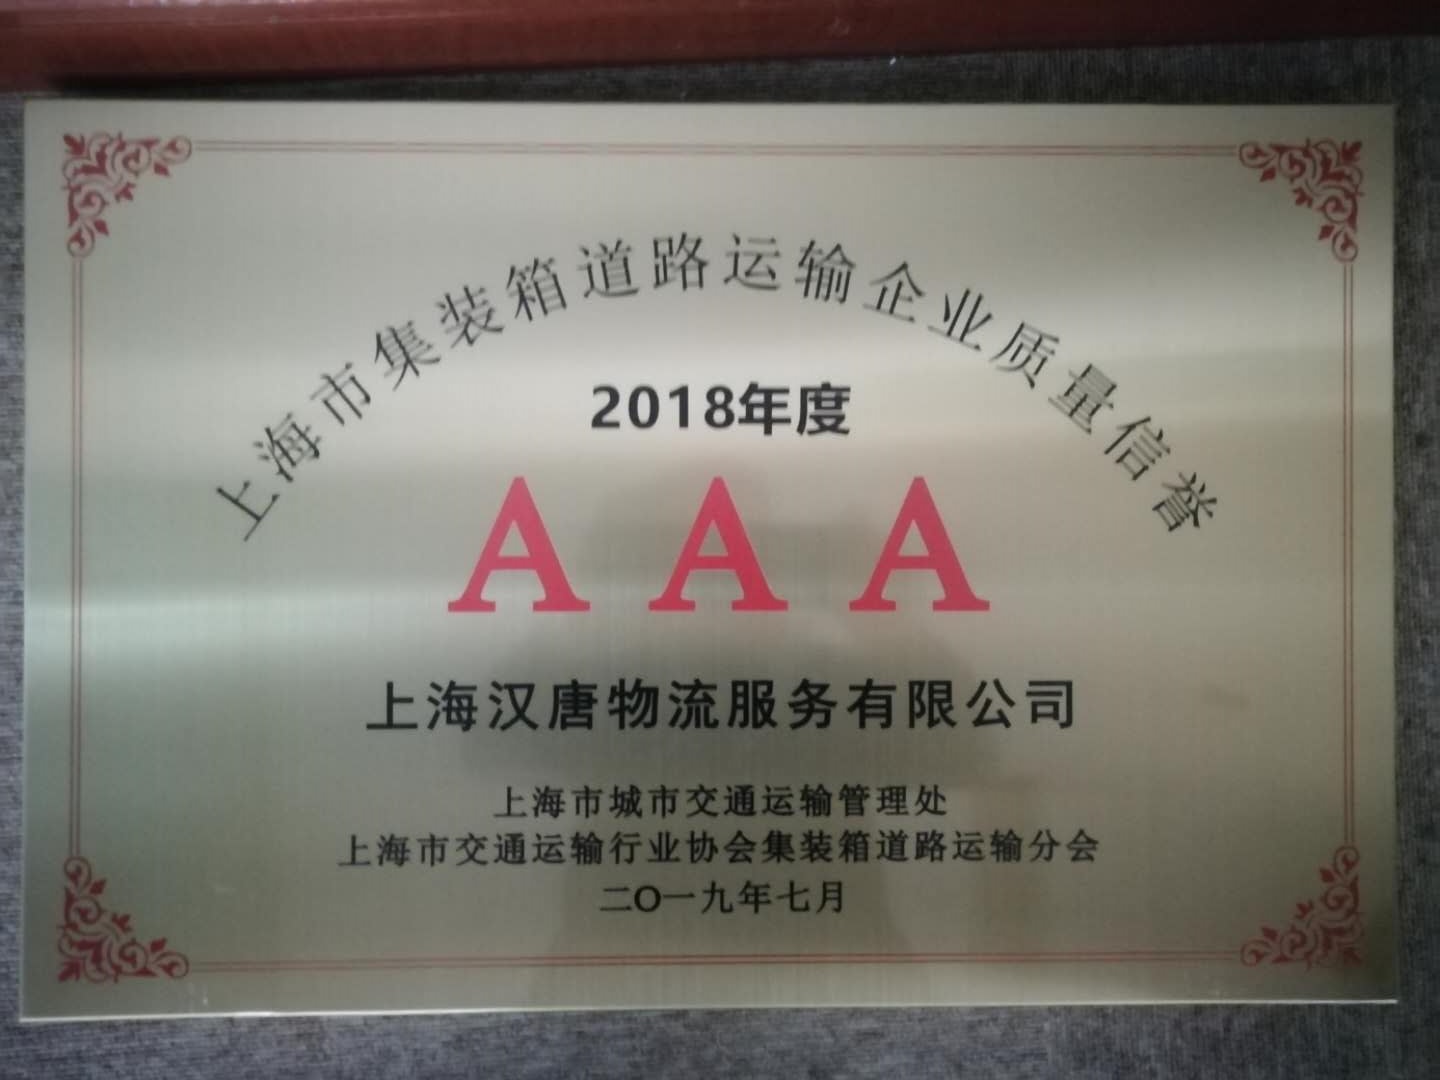 2018年上海市集装箱道路运输行业“AAA”企业